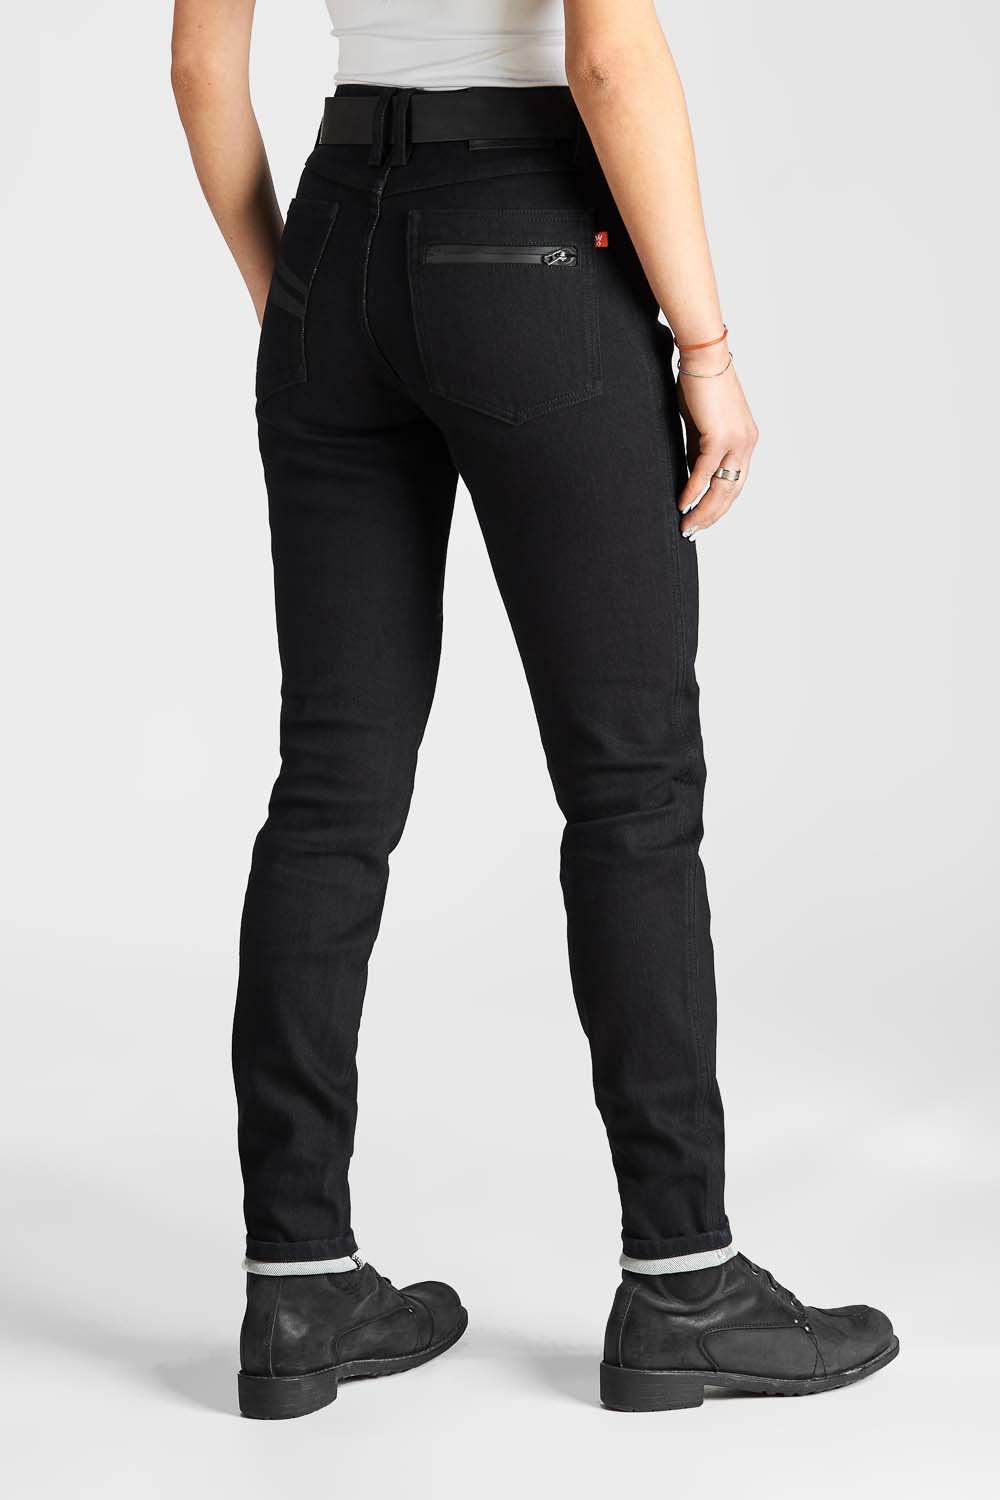 Ladies Motorcycle Jeans | Womens Motorcycle Pants (Kevlar) - Rugged Motorbike  Jeans